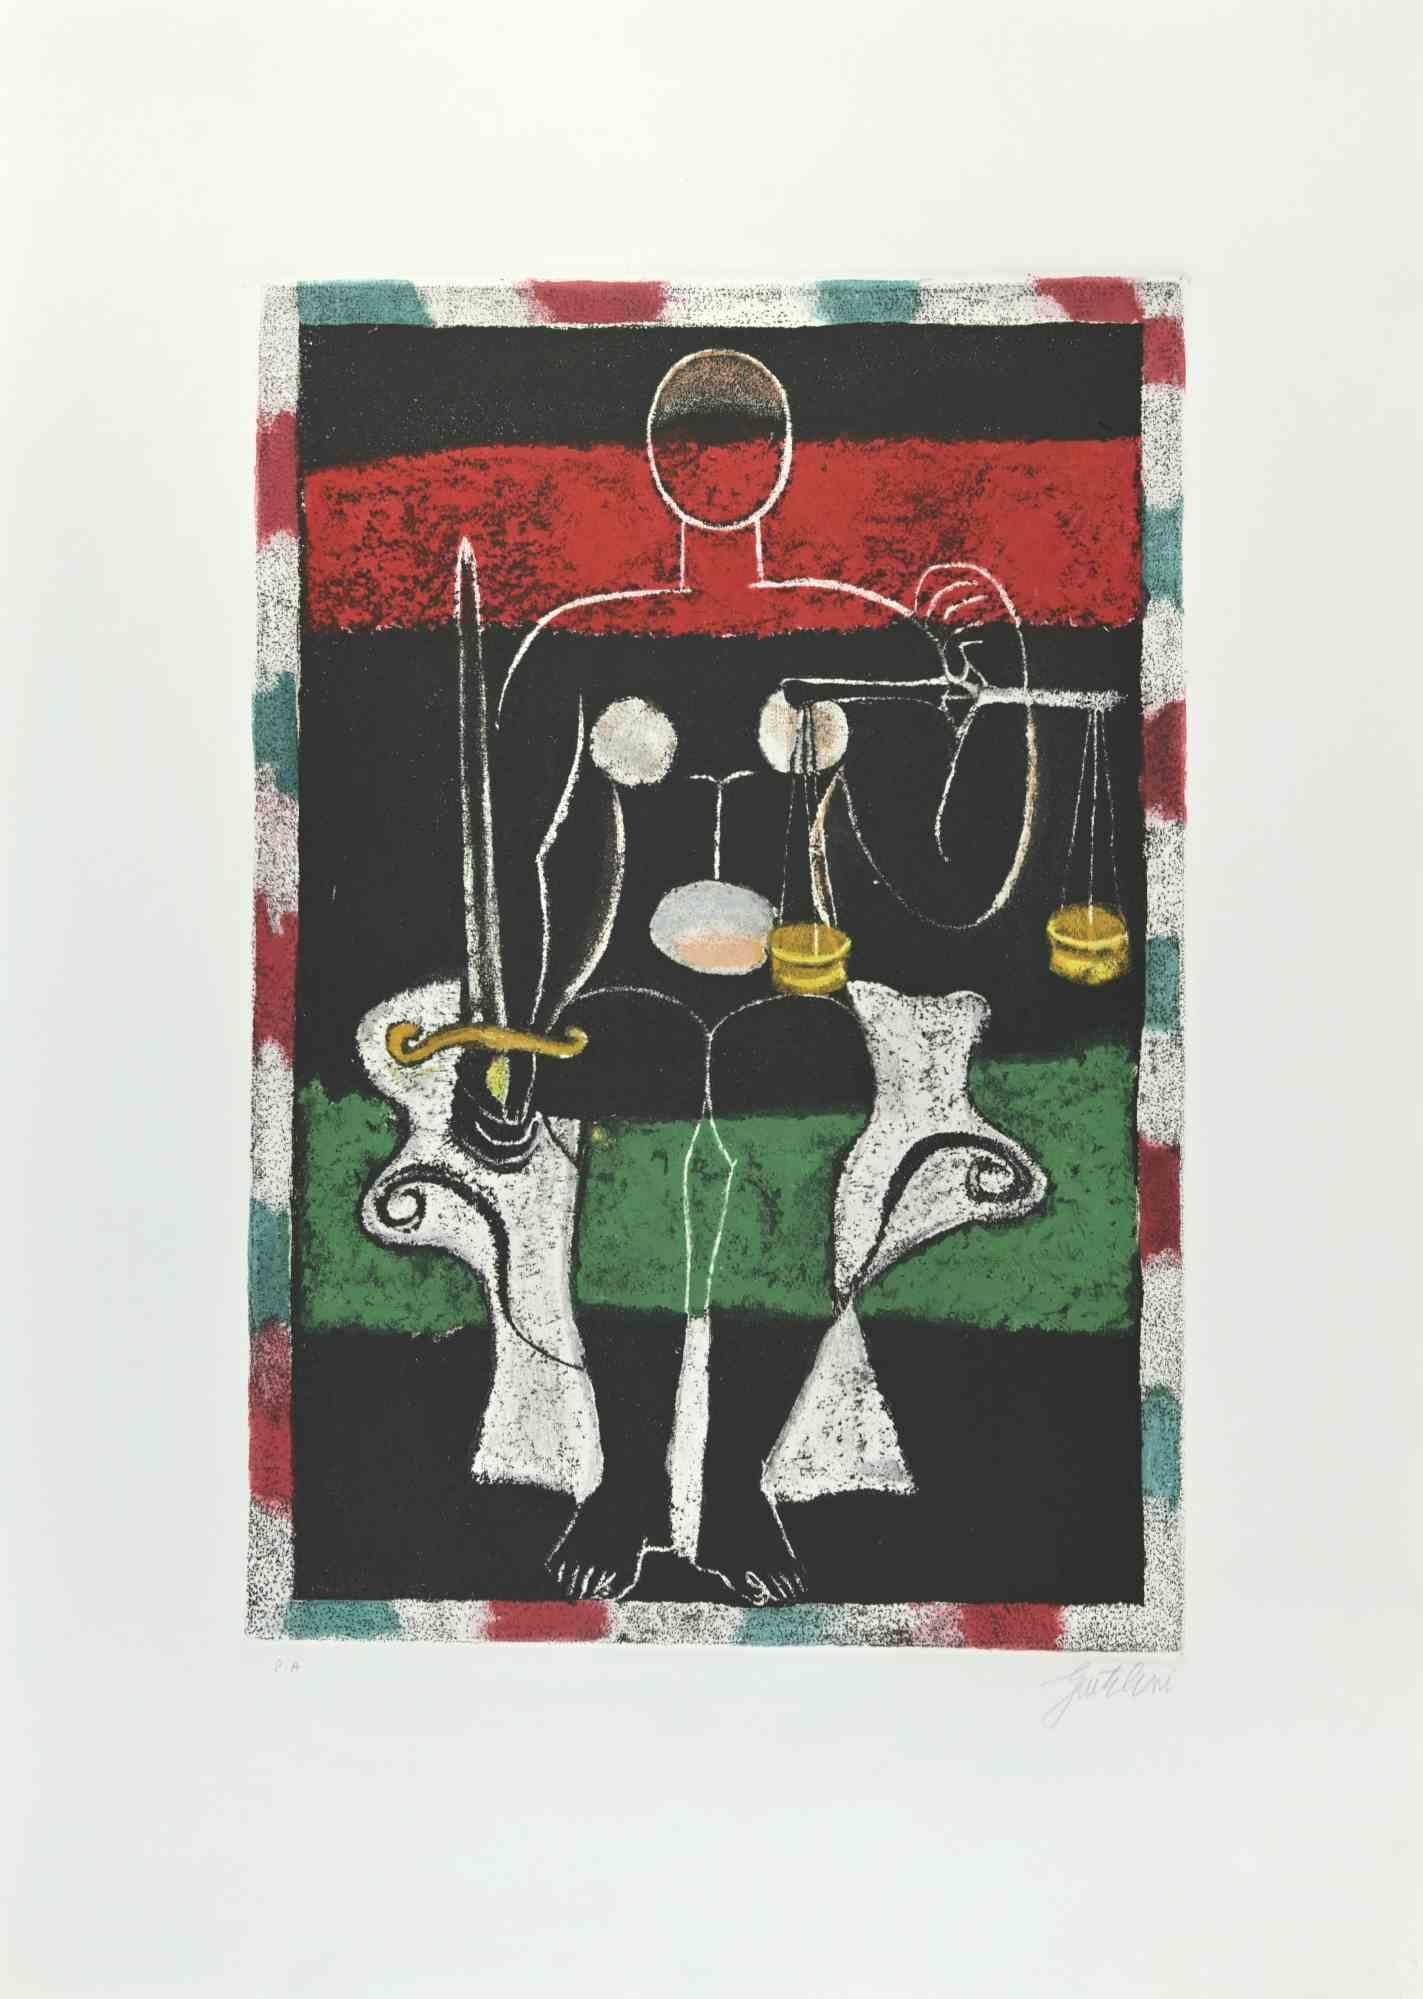 La Justice est une gravure et une aquatinte réalisées par Franco Gentilini (peintre italien, 1909-1981) dans les années 1970.

De la série "Les Tarots" Timbre à sec de Il Cigno Stamperia d'Arte. 

Signé à la main au crayon sur la partie